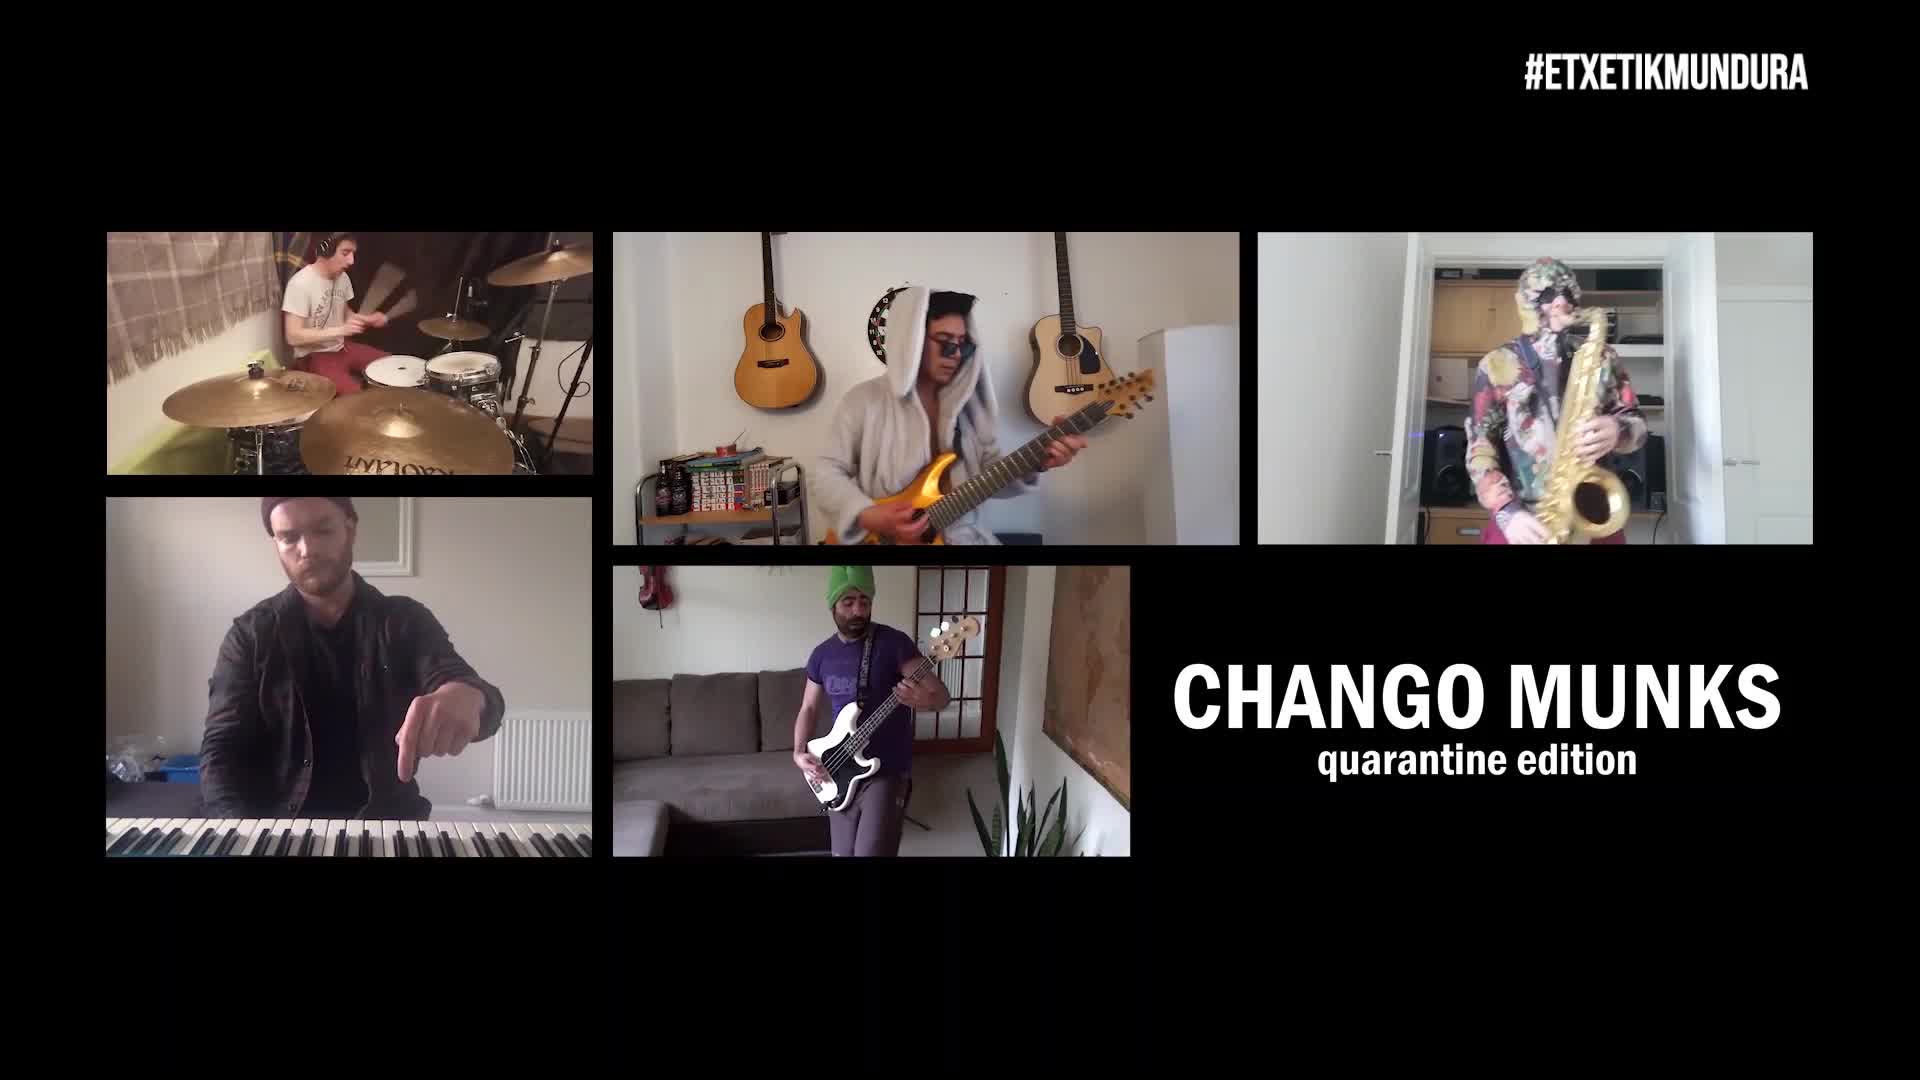 Chango Munks musika taldea, etxetik mundura